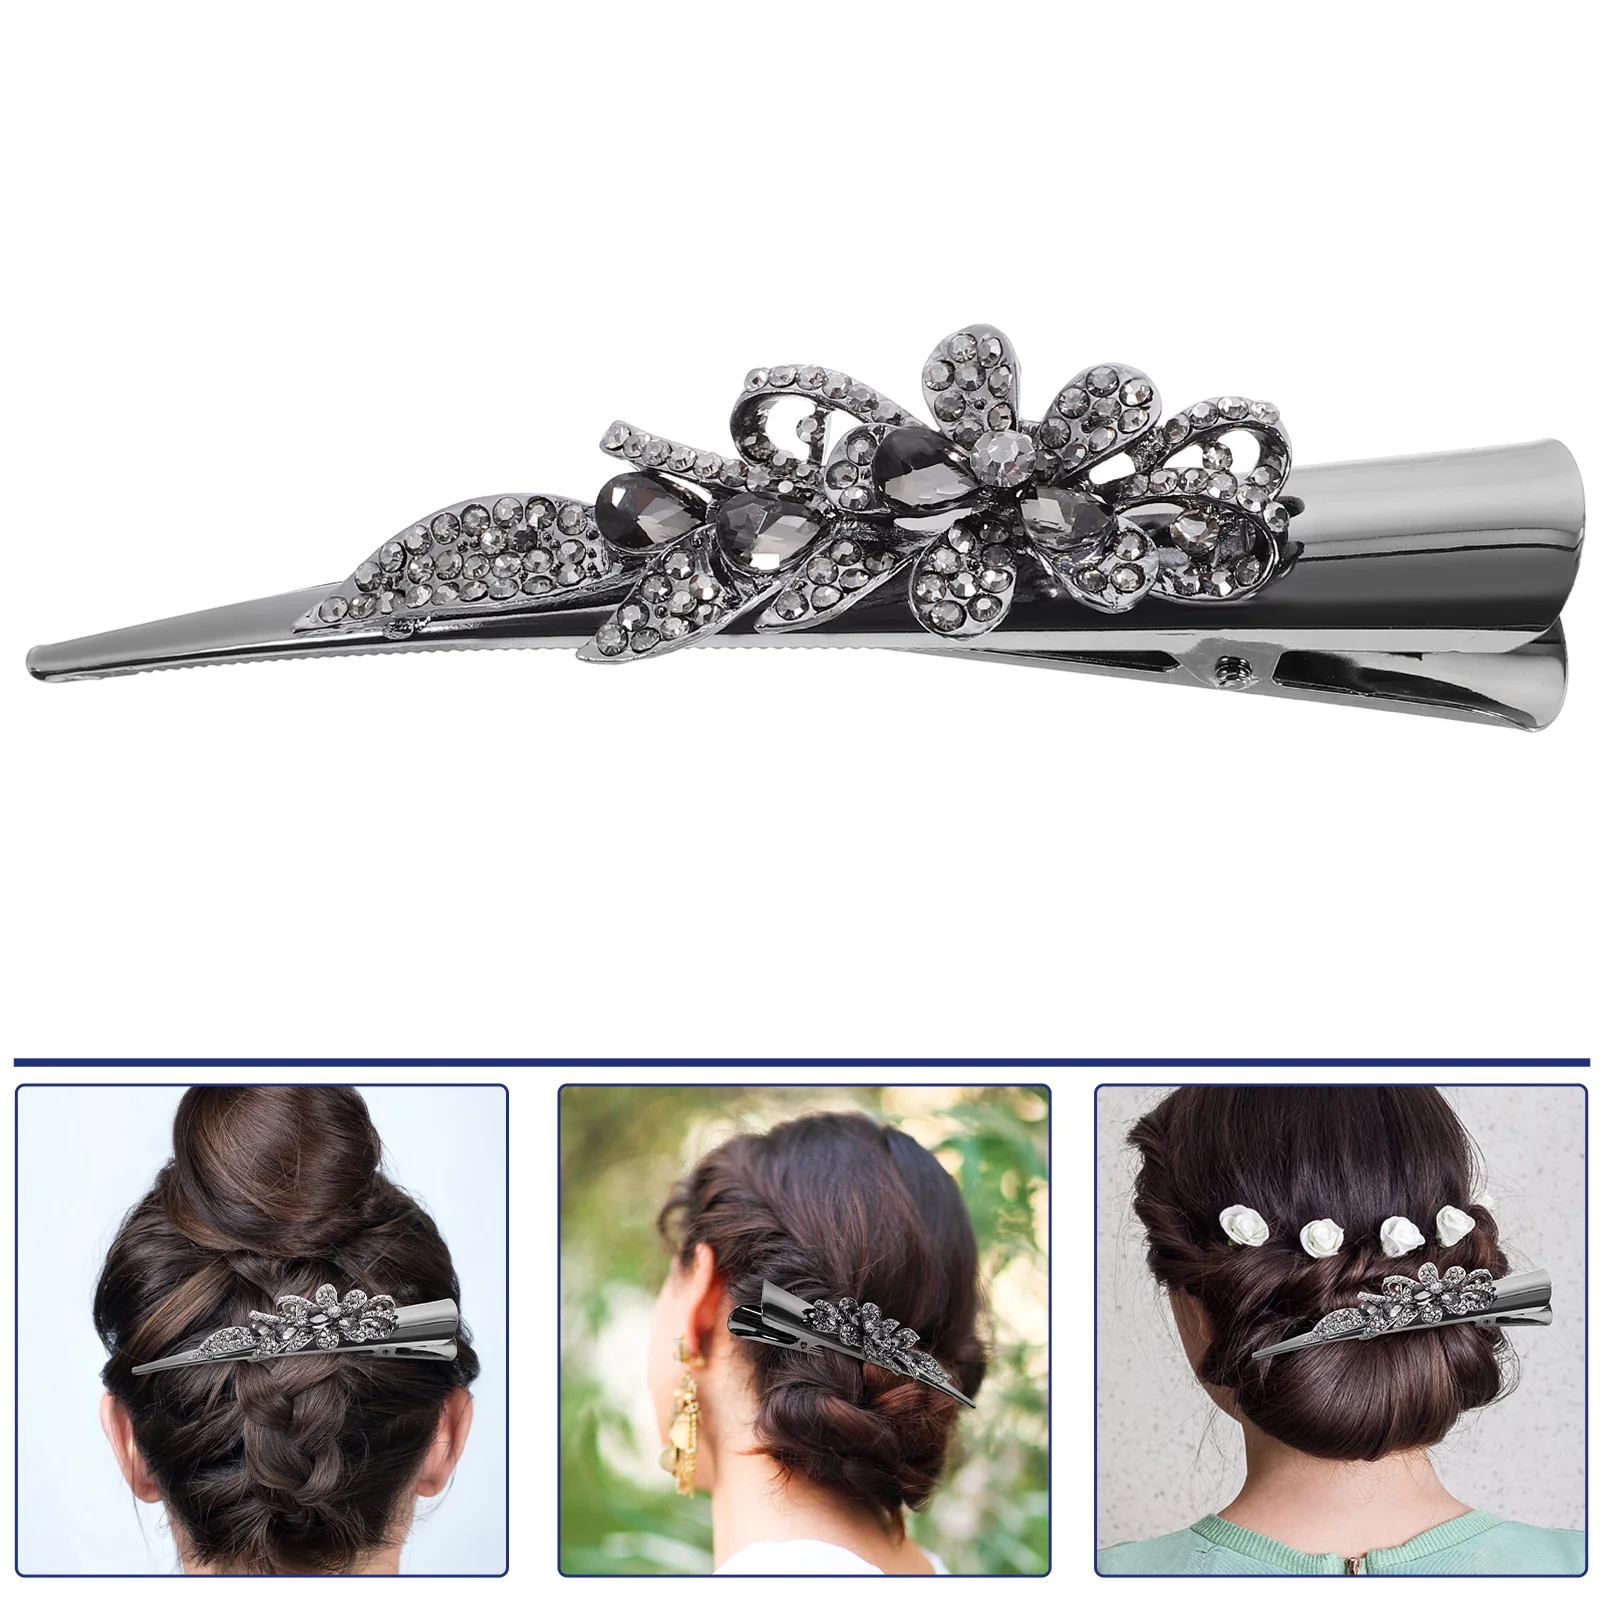 

Hair Pins Decorative Clip Women Accessories Girl Rhinestone Duckbilled Vintage Miss